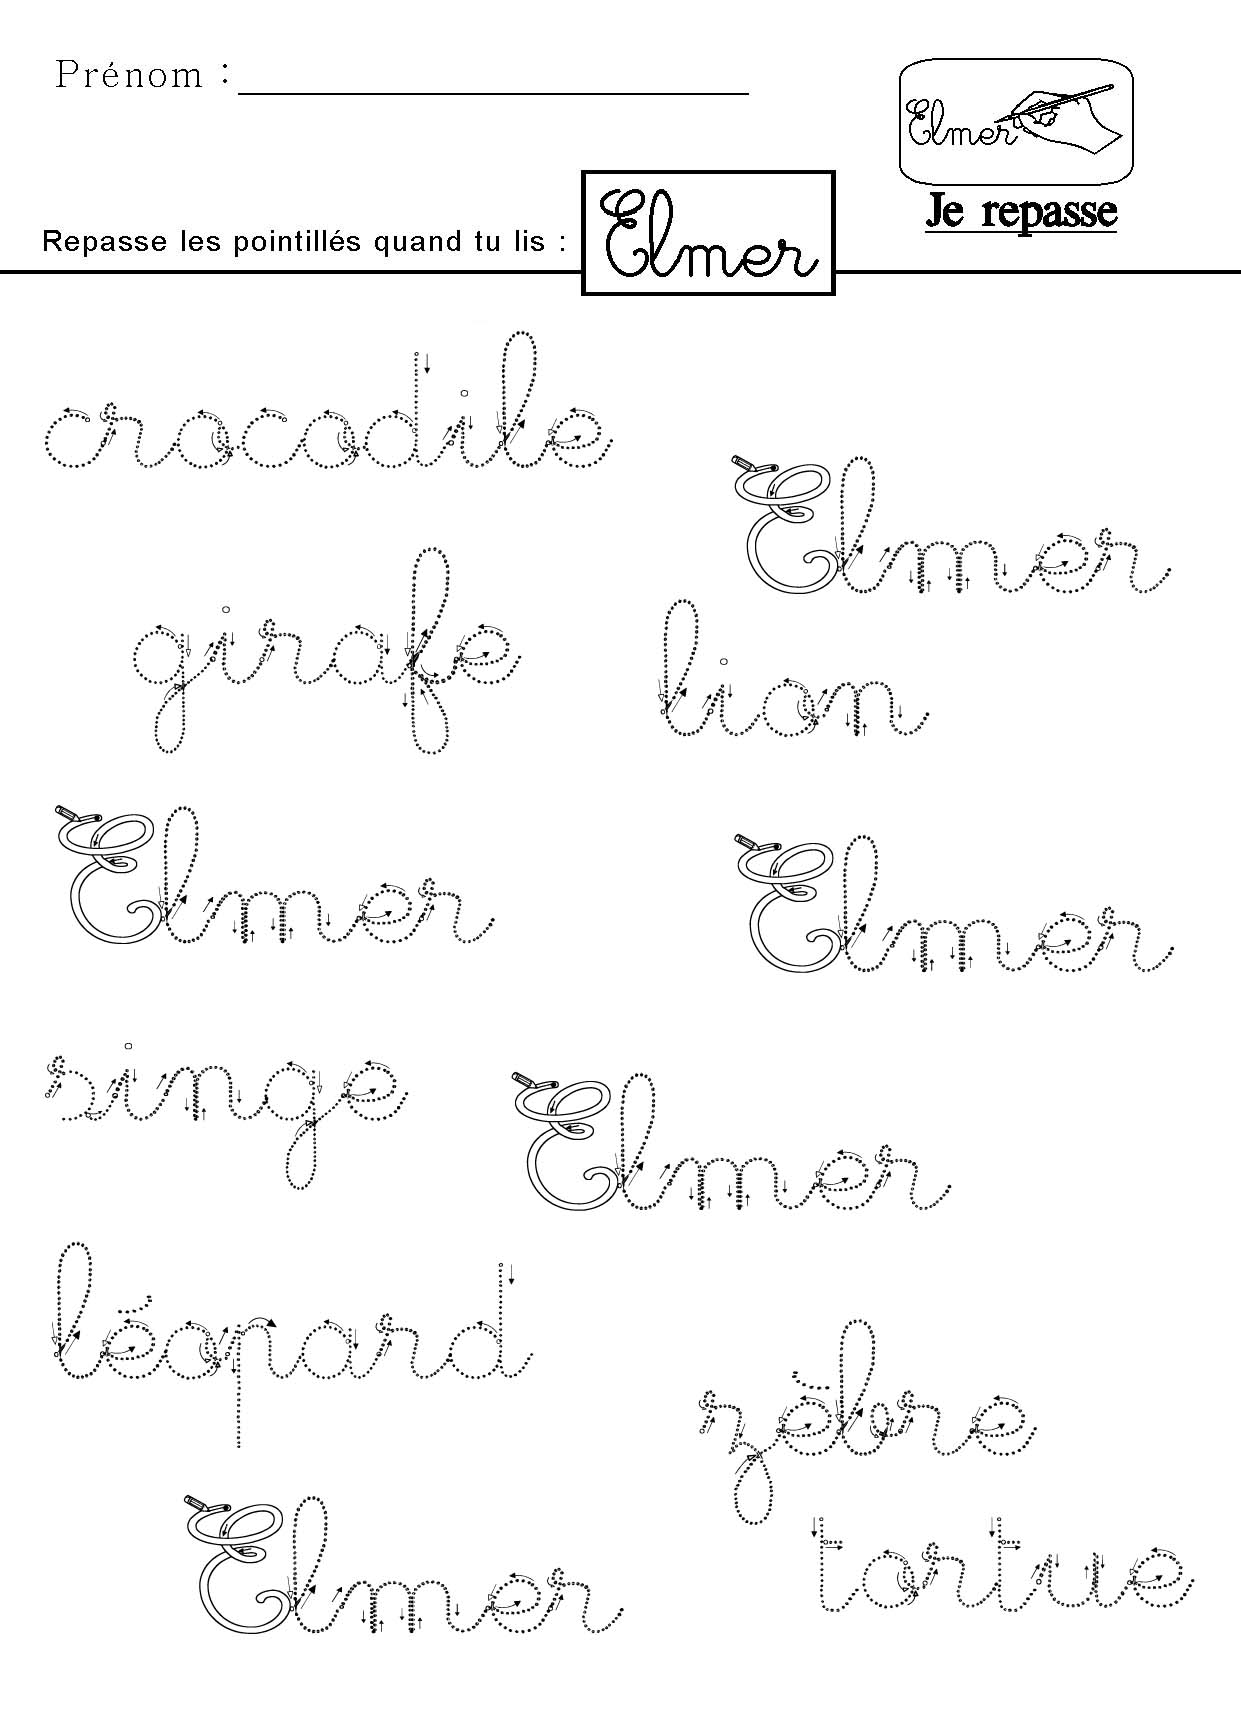 Je lis le mot Elmer en écriture cursive et je repasse les pointillés